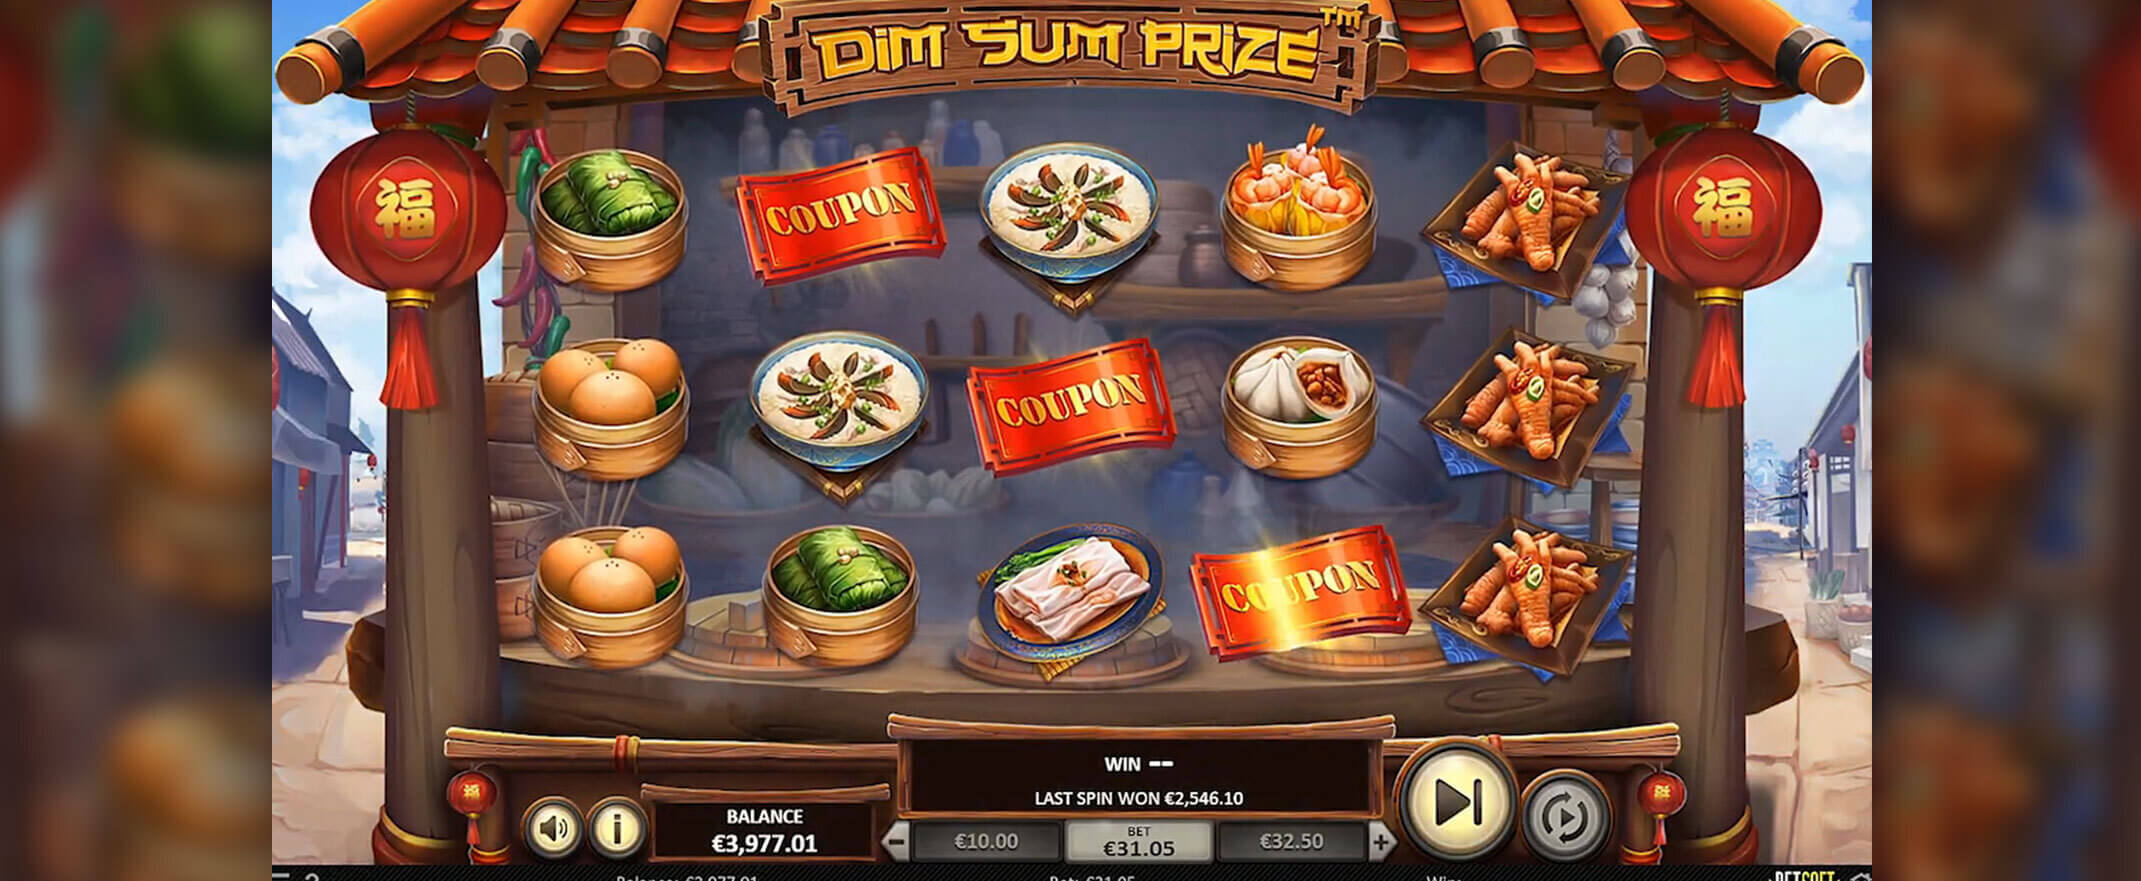 Dim Sum Prize Spielautomaten Bewertung